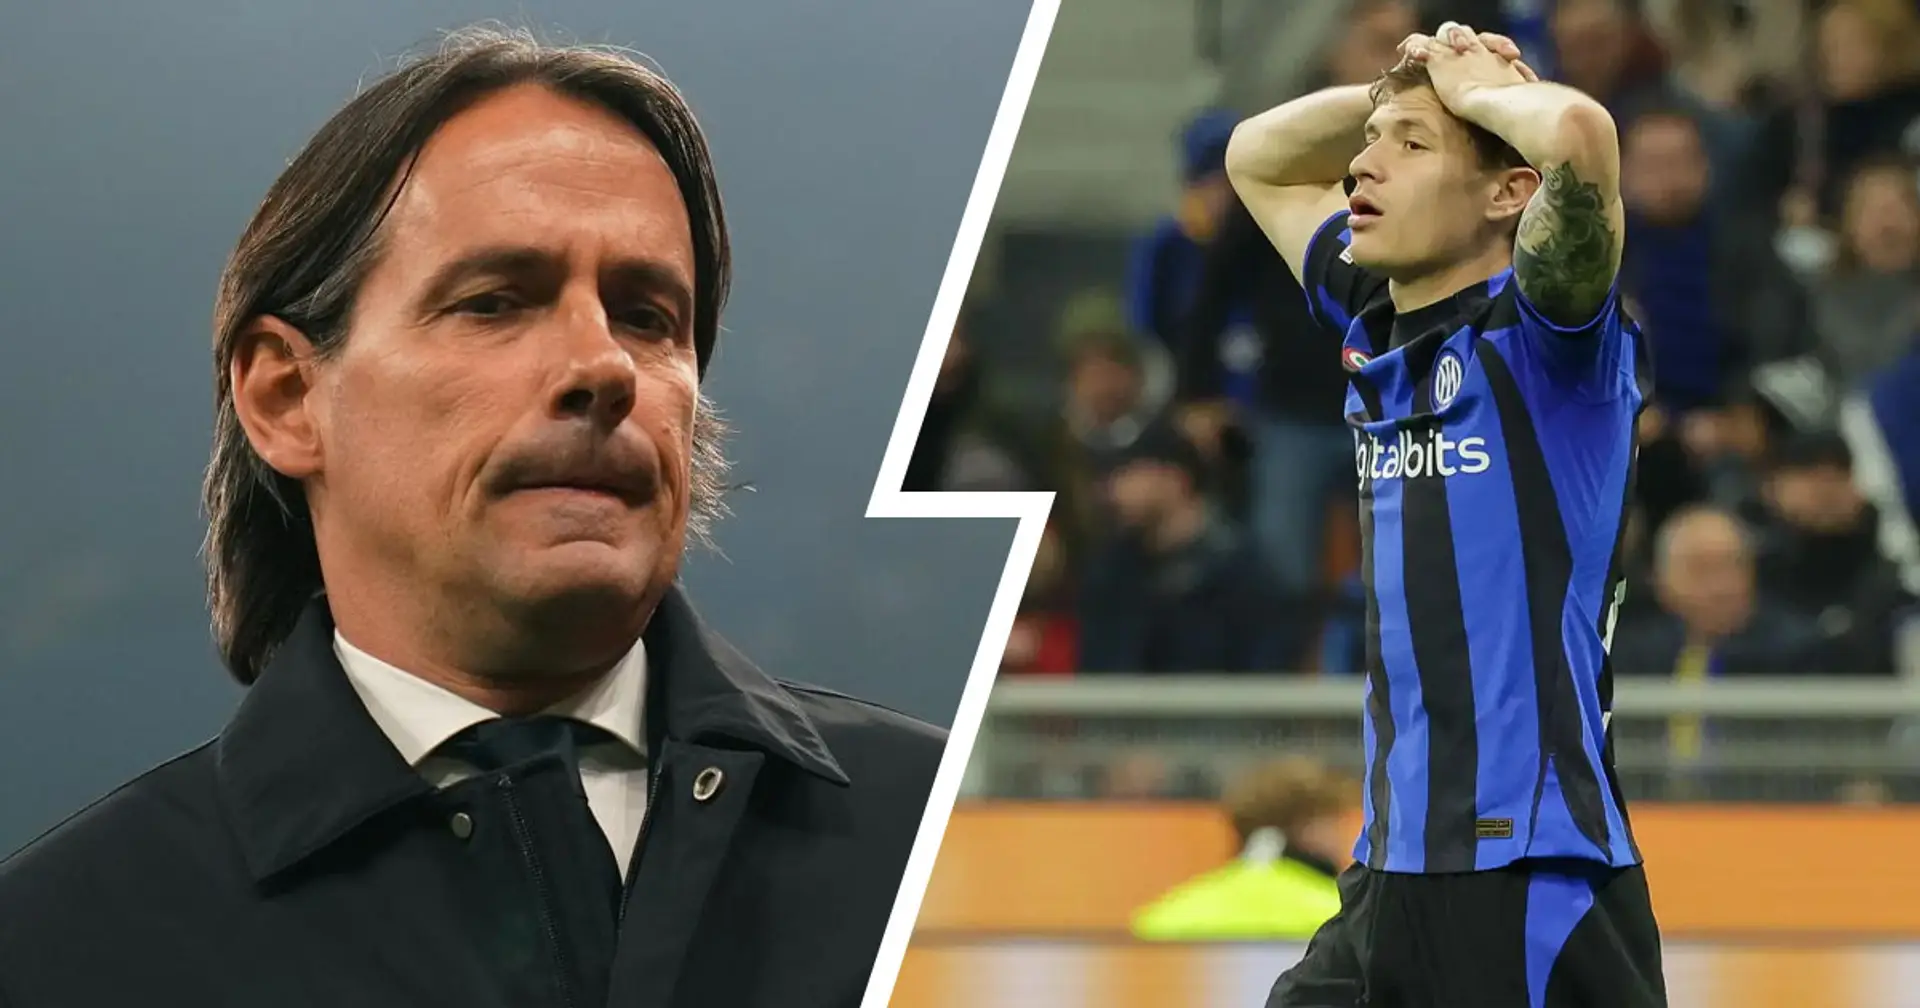 "Parliamo della partita": i tifosi dell'Inter criticano Inzaghi su un aspetto in particolare dopo il ko con la Juventus